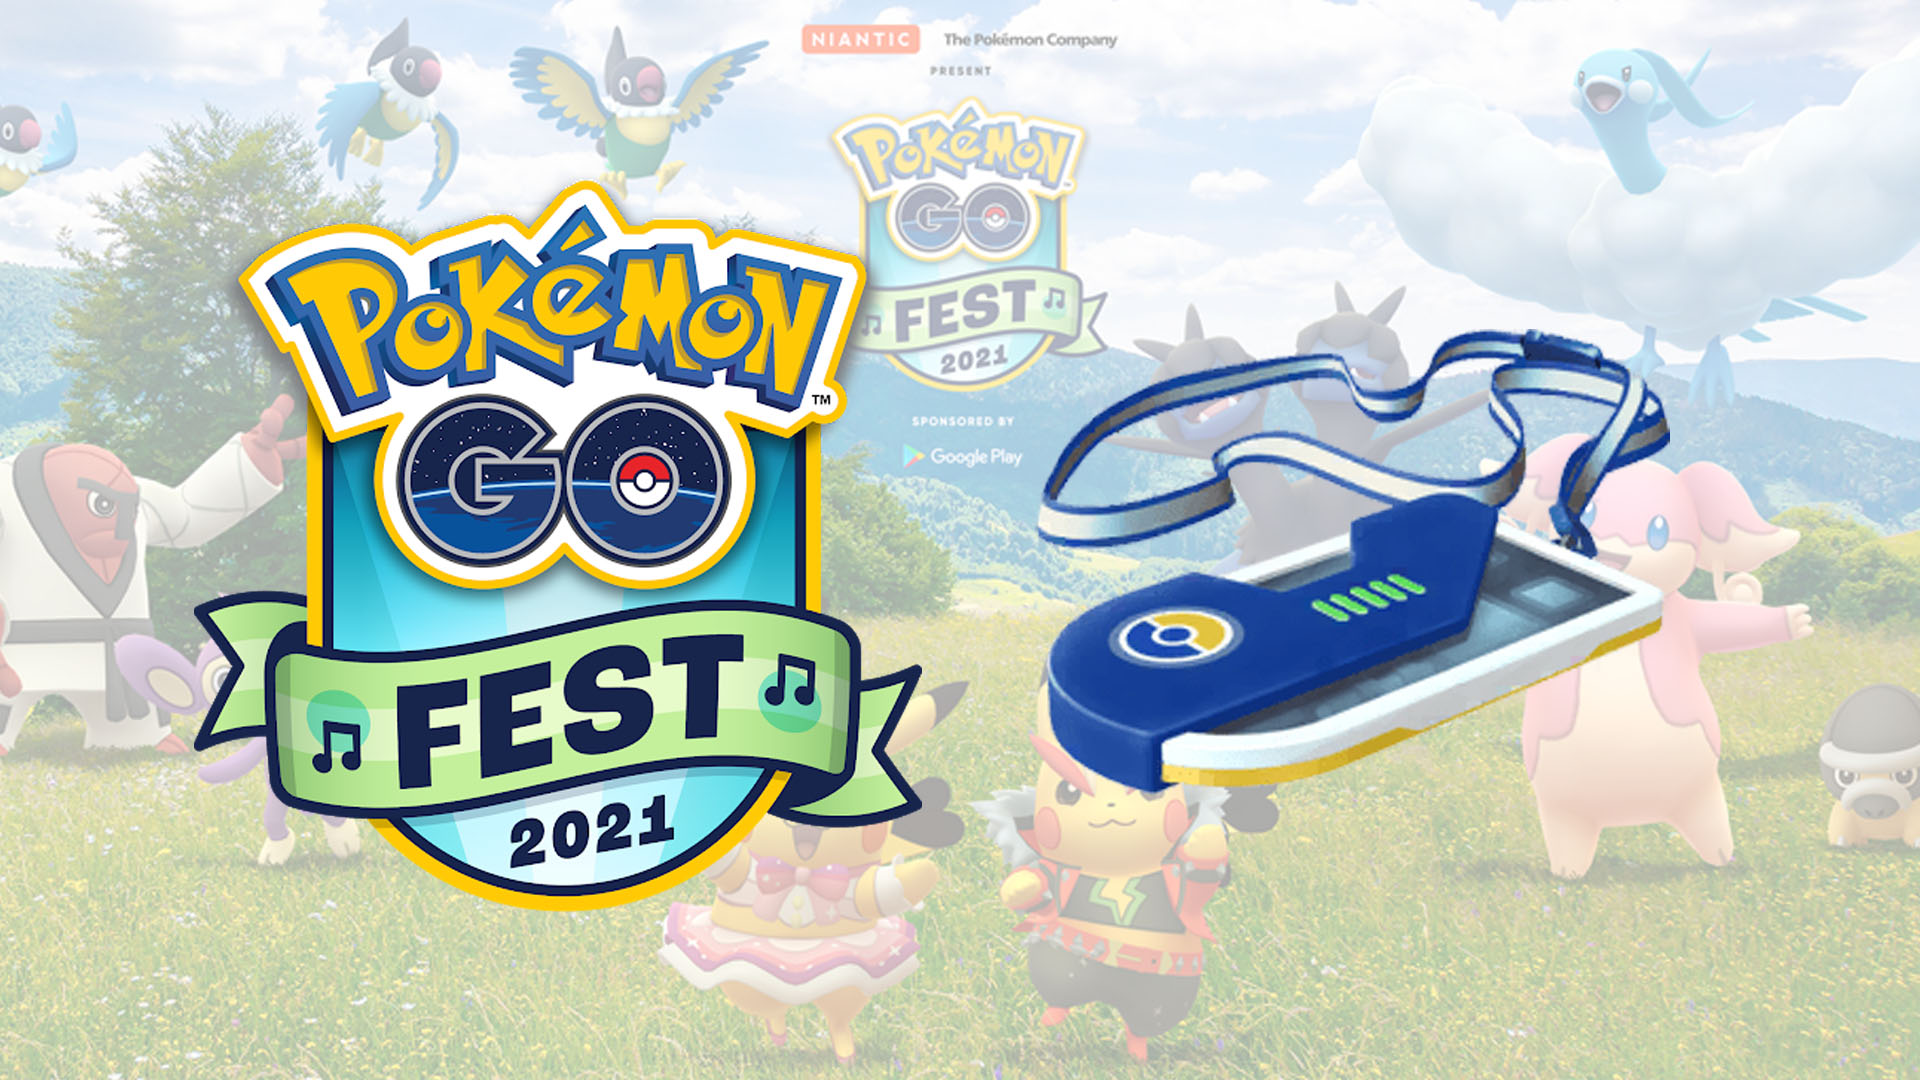 Win een Pokémon GO Fest 2021-ticket en twintig euro aan tegoed voor items!